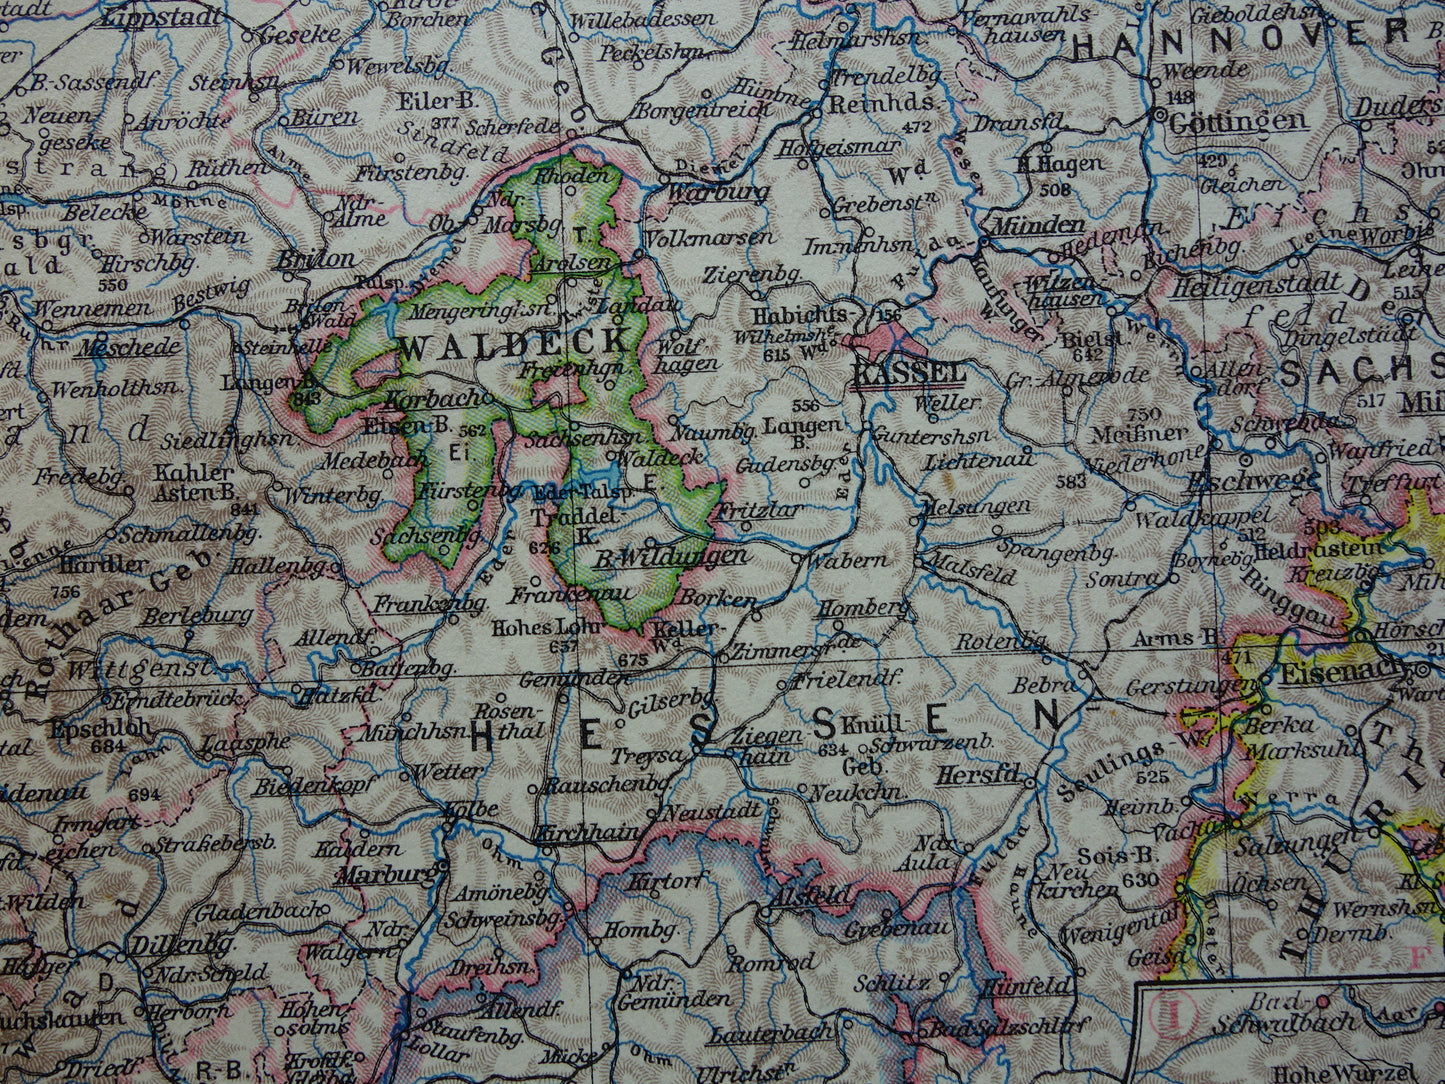 DUITSLAND oude landkaart van Rhijnland 1928 originele vintage Duitse kaart Ruhrgebied Keulen Essen Dortmund Kassel